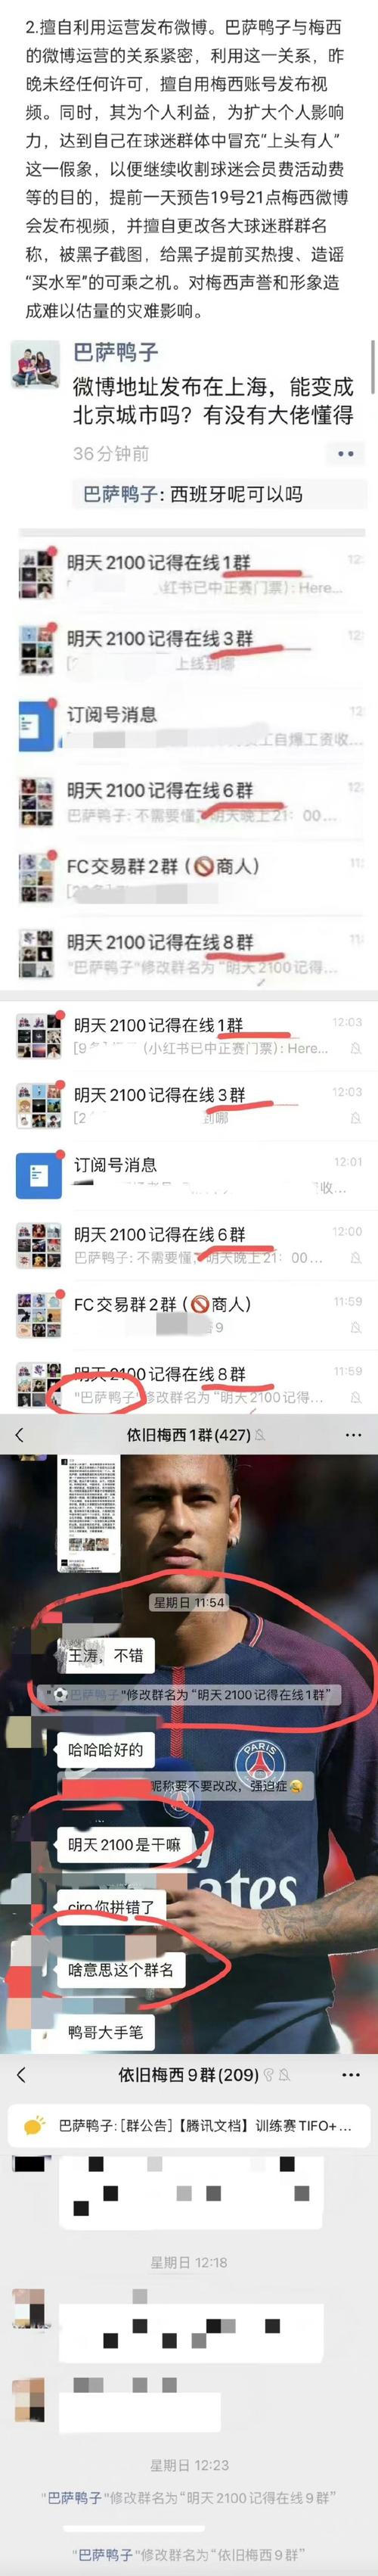 王涛否认梅西道歉视频为ai合成